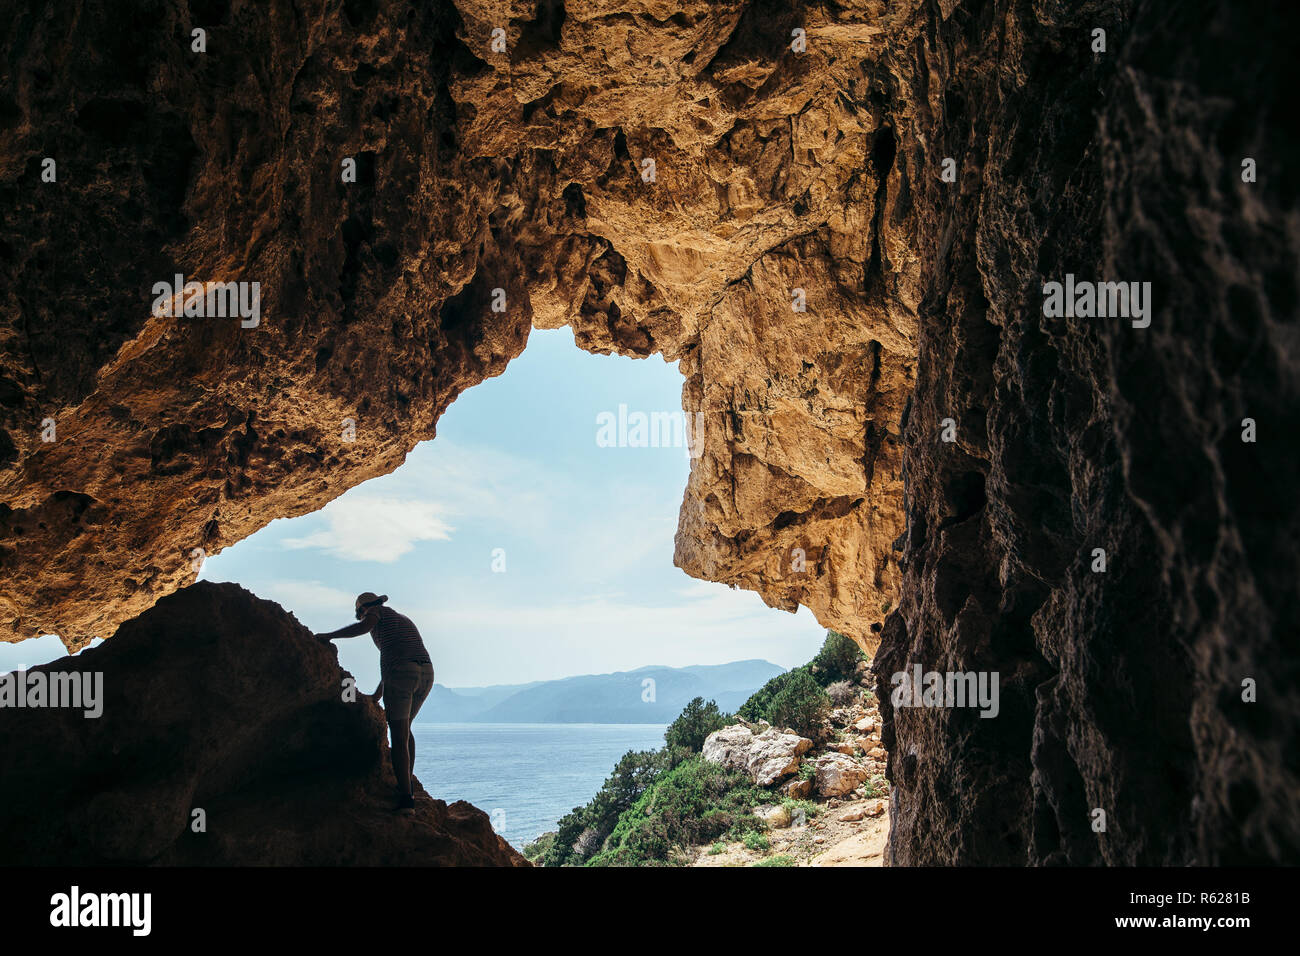 Maschio di rocciatore silhouette su una scogliera in una grotta contro il bellissimo paesaggio marino Foto Stock